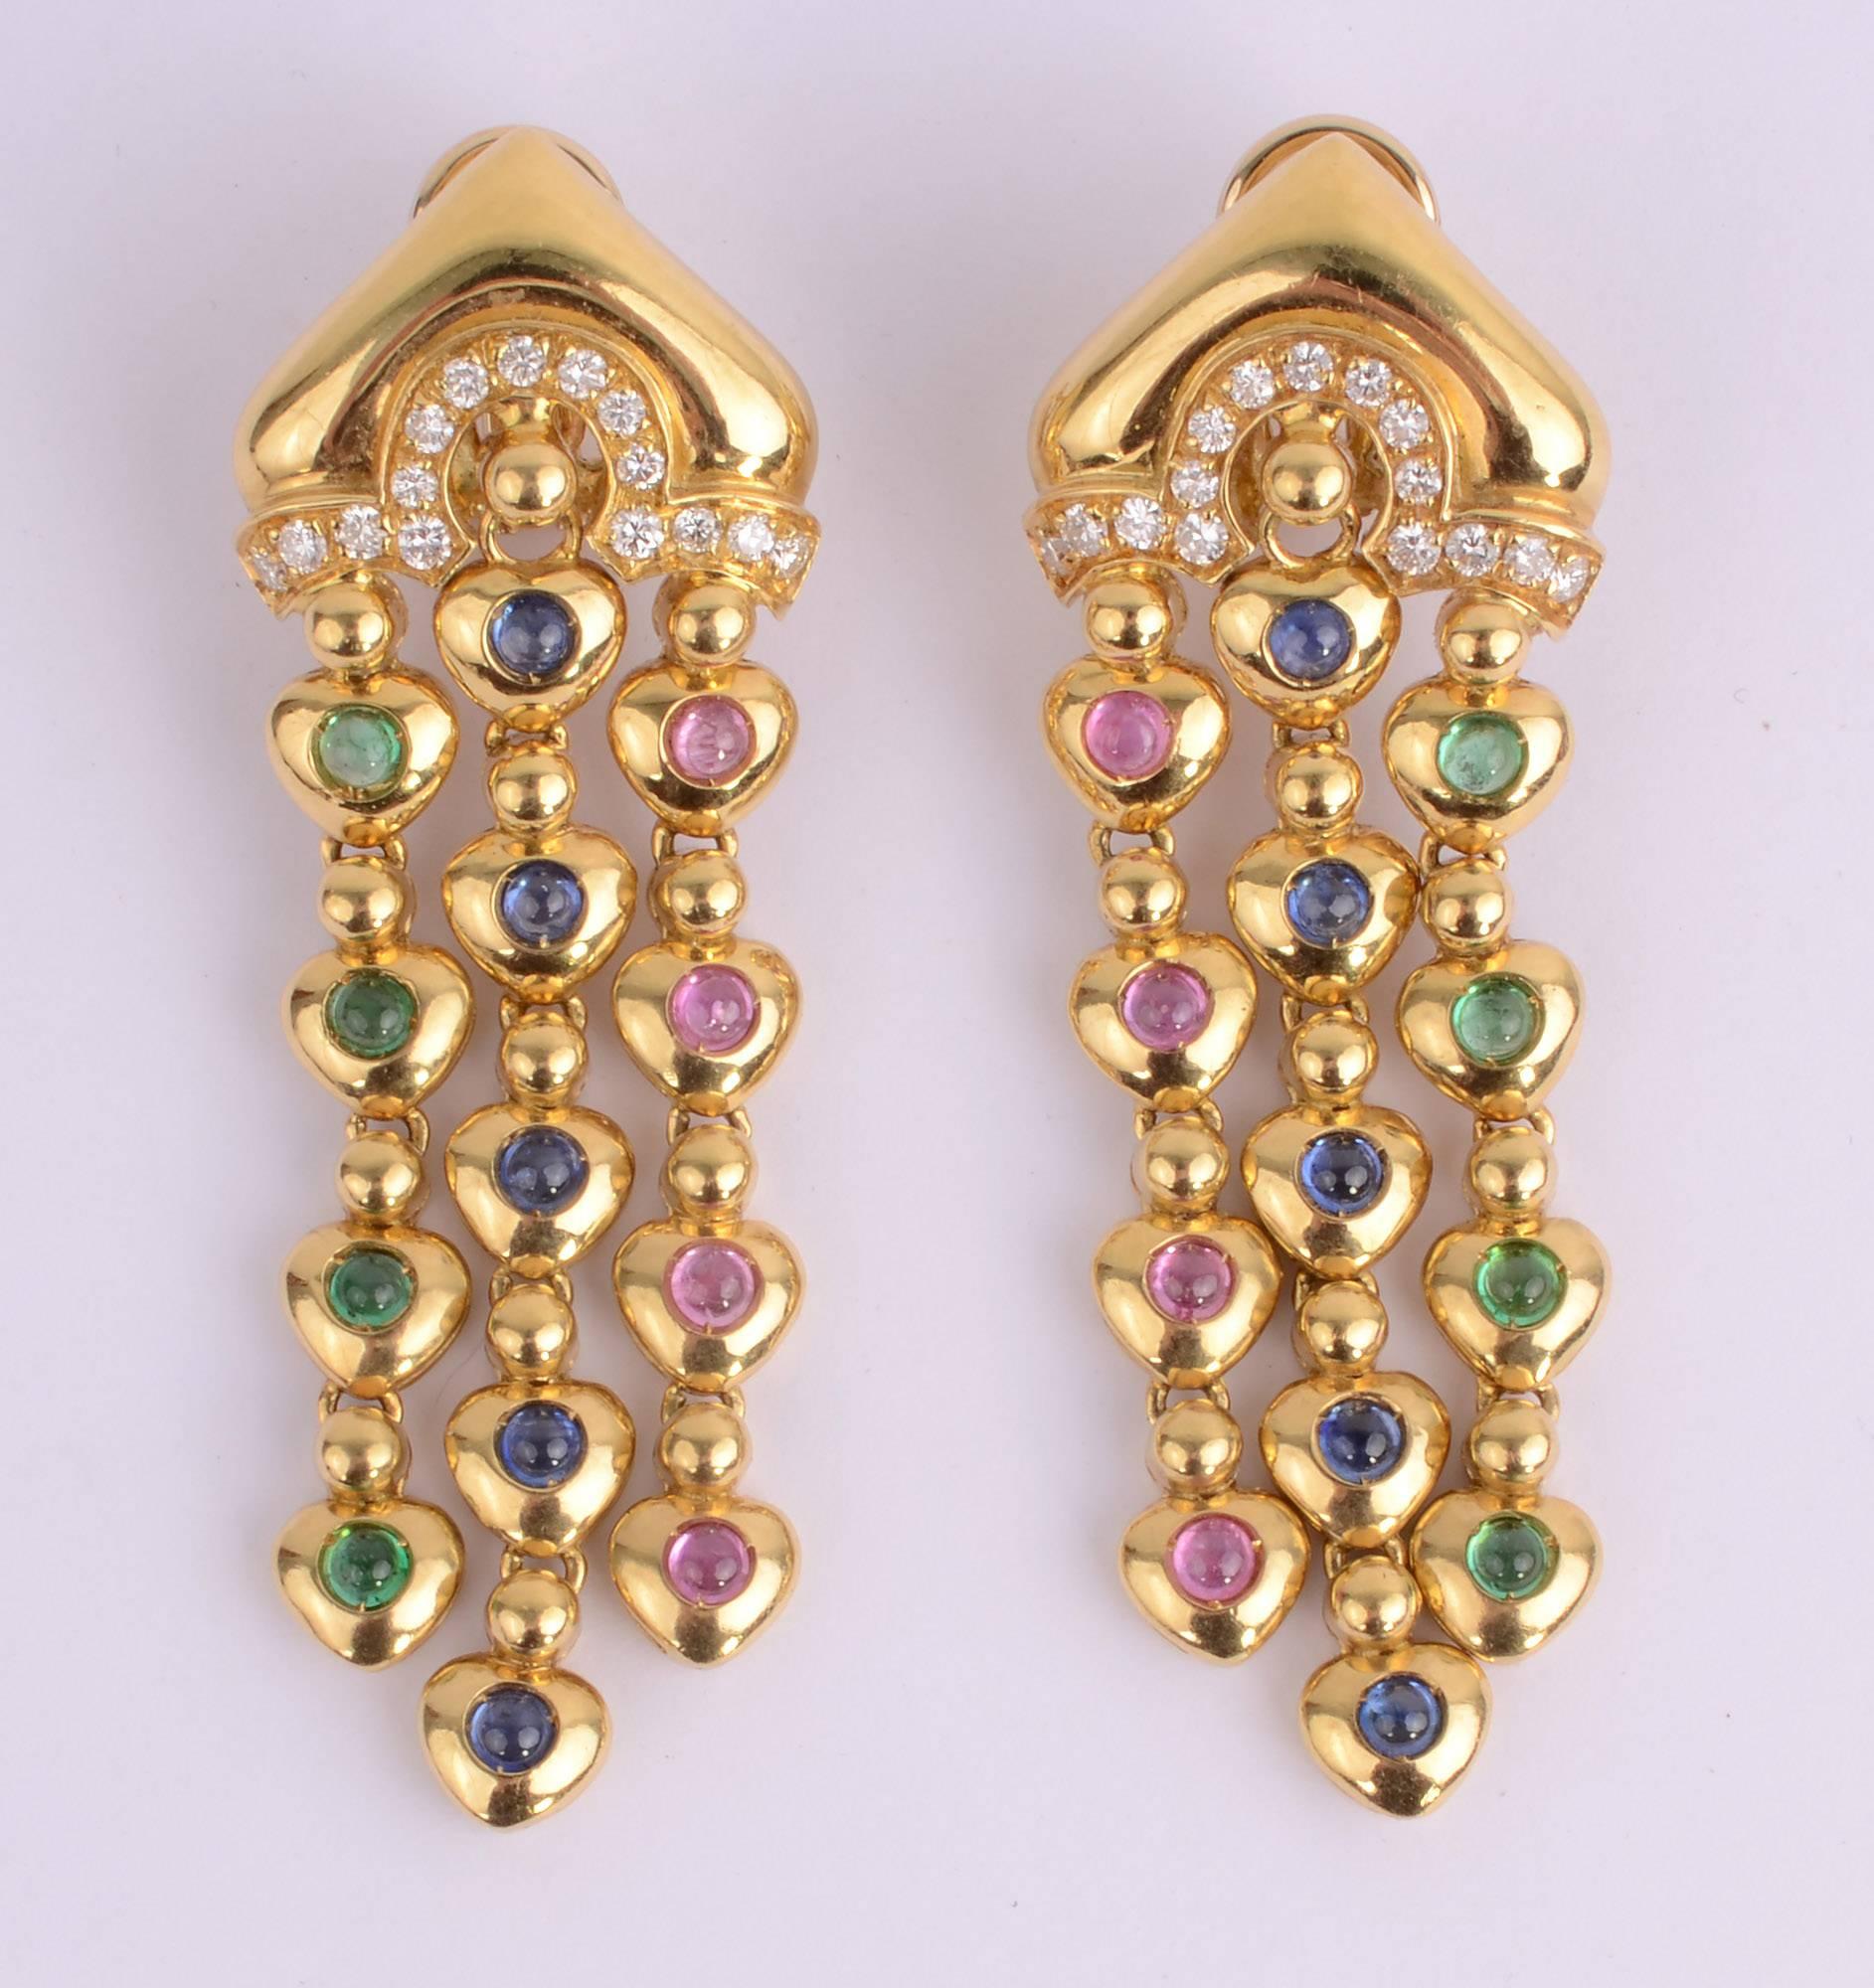 Exquises boucles d'oreilles pendantes en or 18 carats de Salavetti avec des diamants sur le dessus et des filaments de tourmalines roses, vertes et bleues. Ils mesurent 2 5/8 pouces de longueur et 7/8 pouces de largeur sur le dessus. Les dos